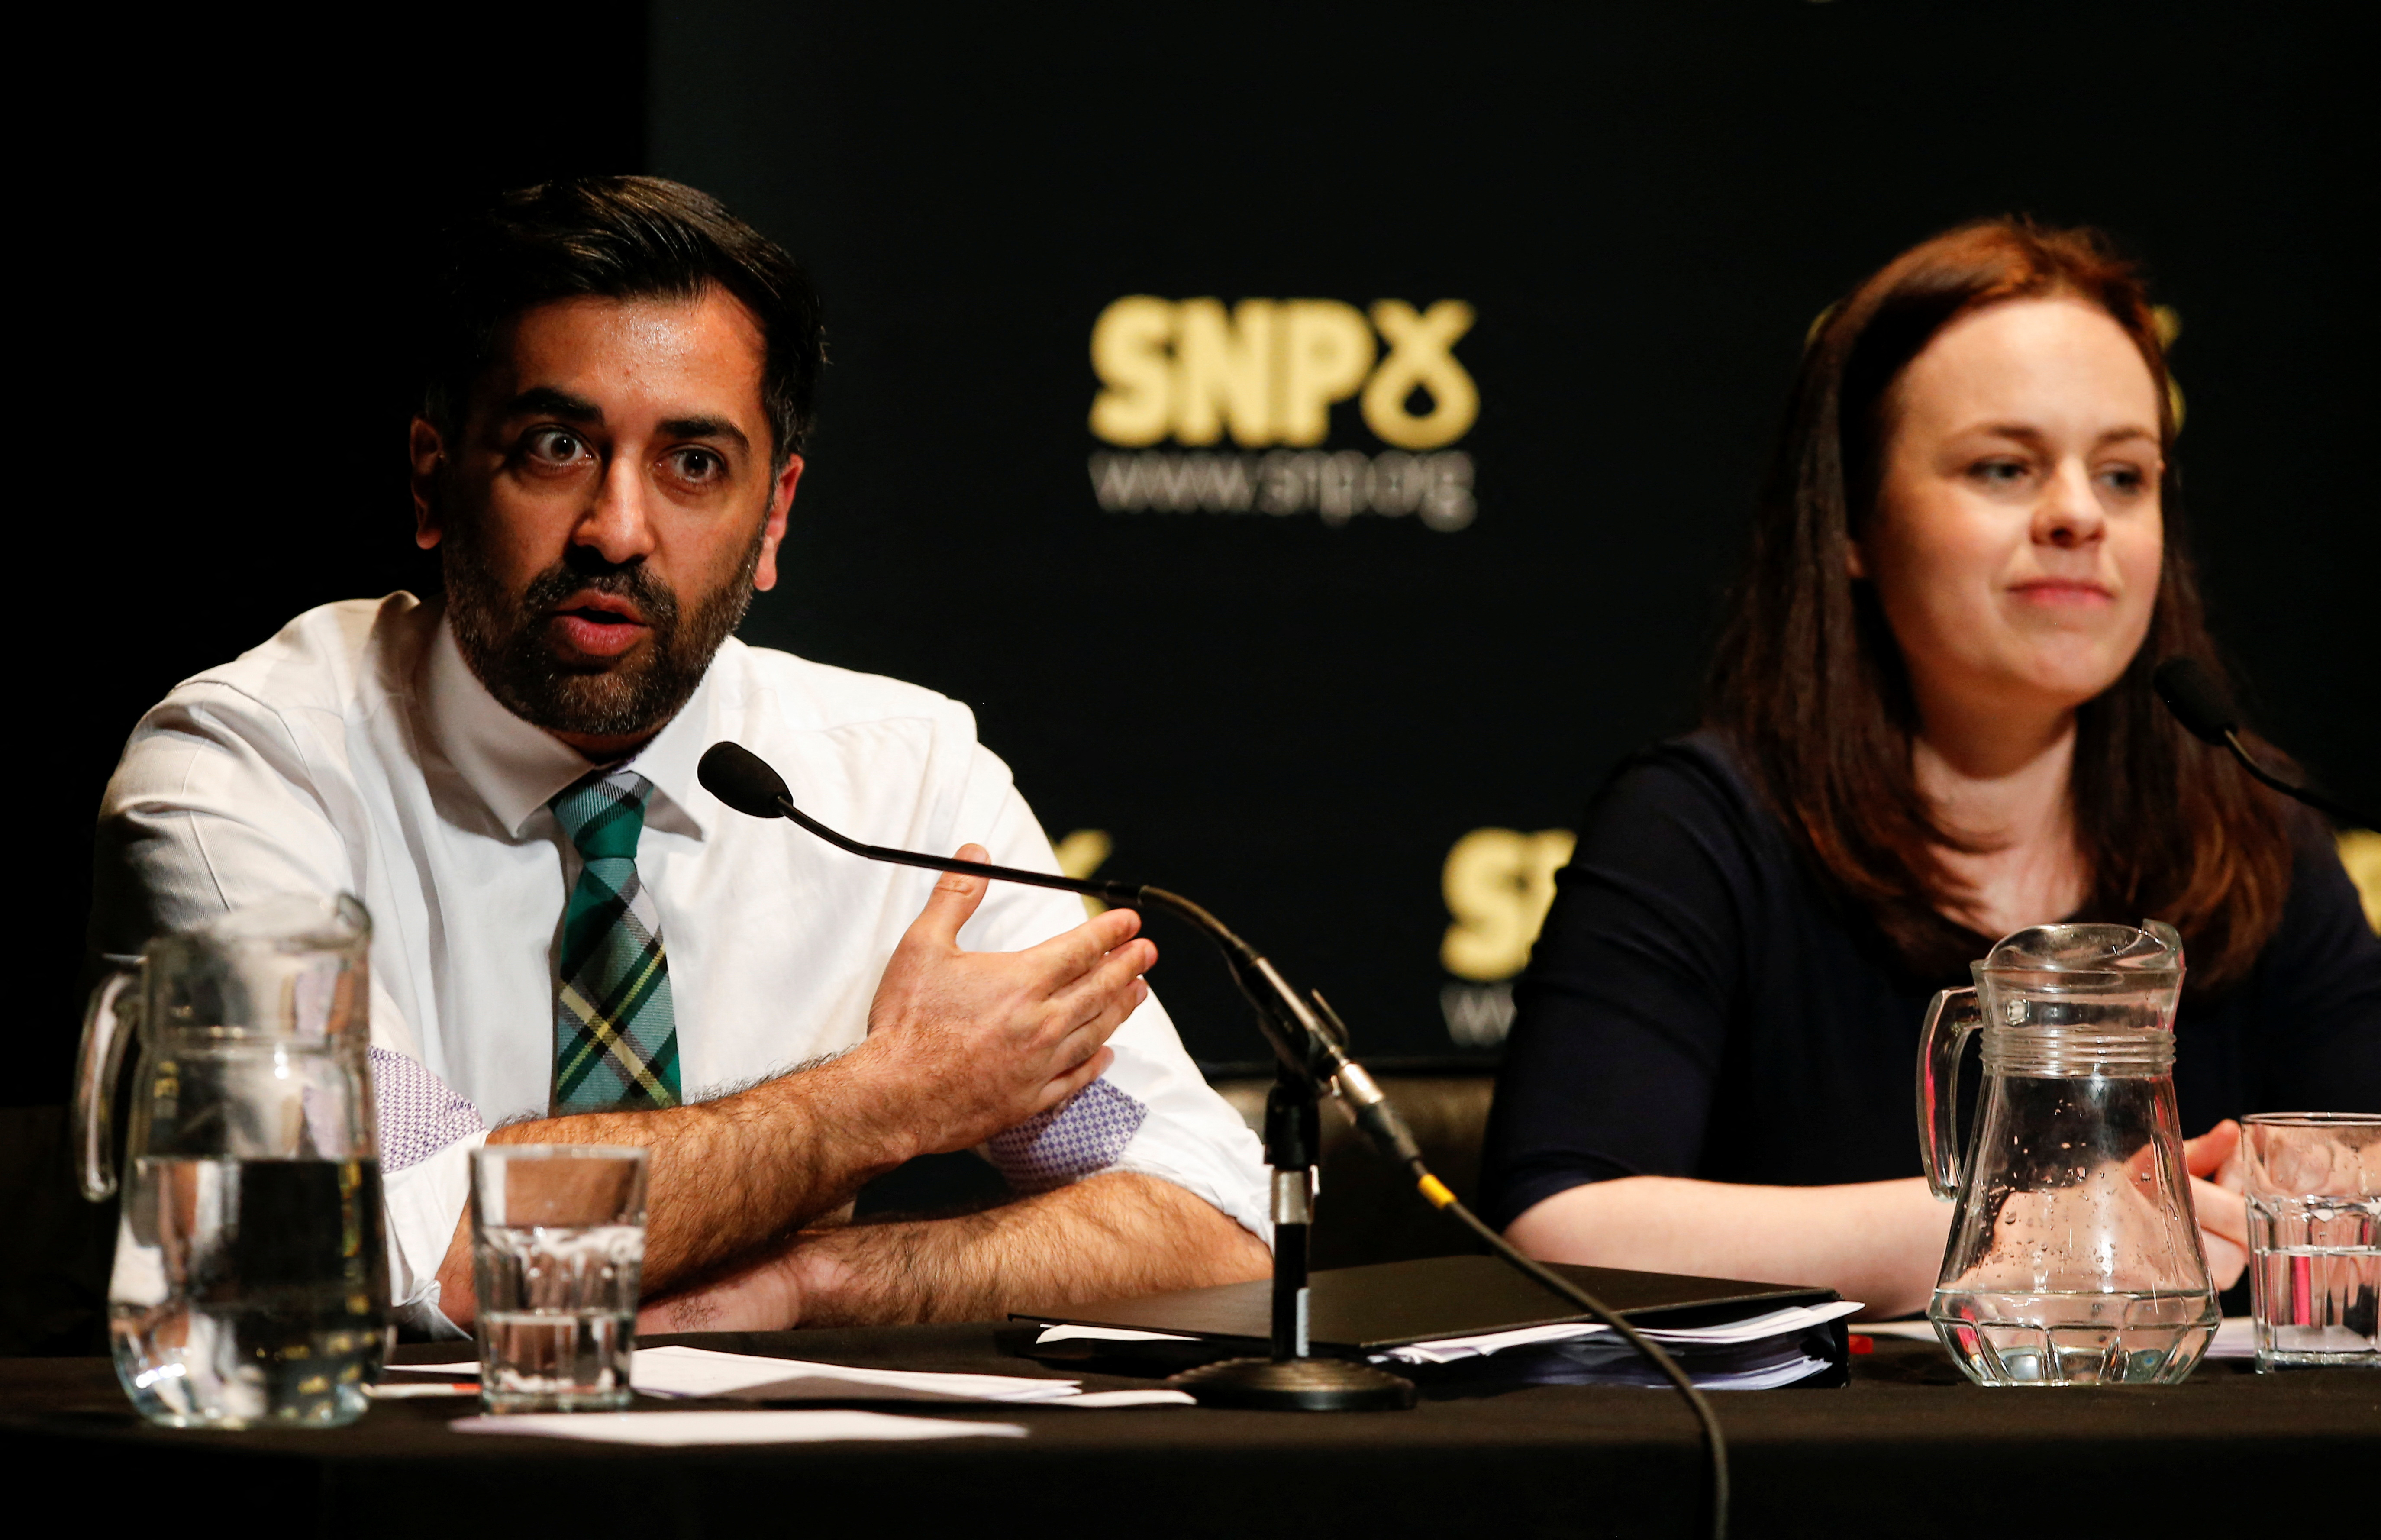 SNP leadership hustings in Aberdeen